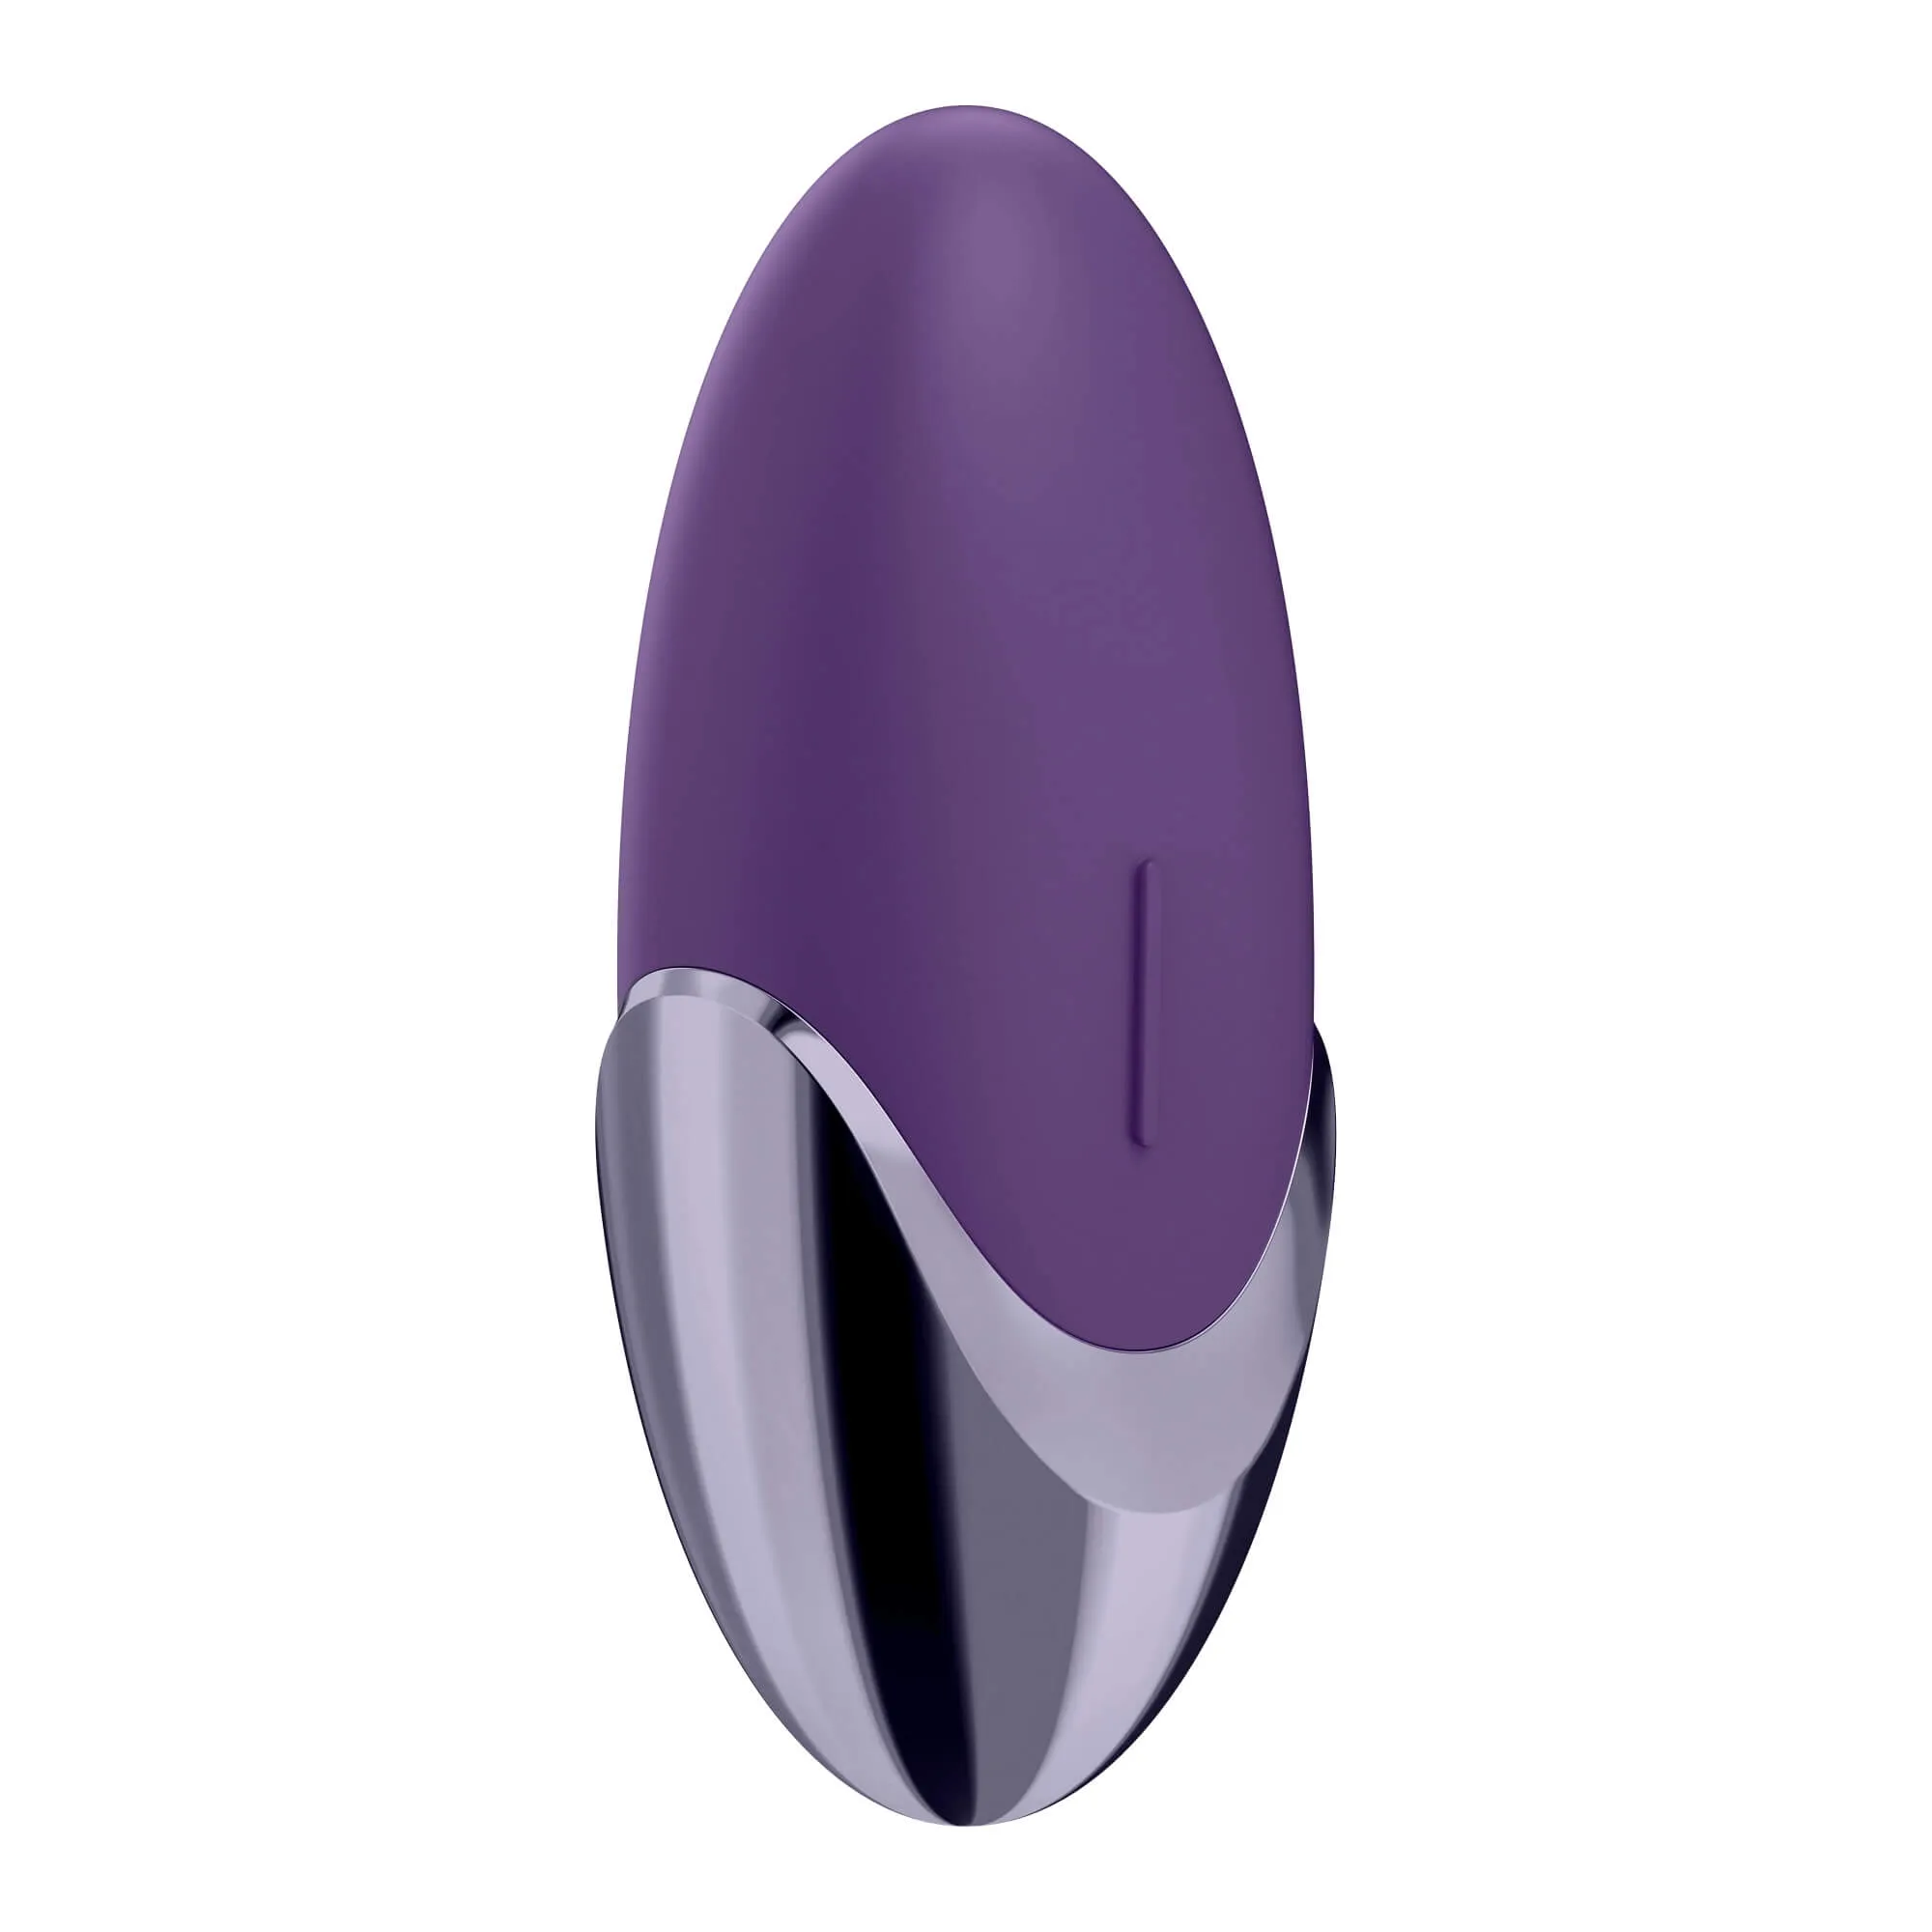 Vibrátor se zaoblenými tvary as oválným designem díky kterému se zcela přilíhne na Váš klitoris